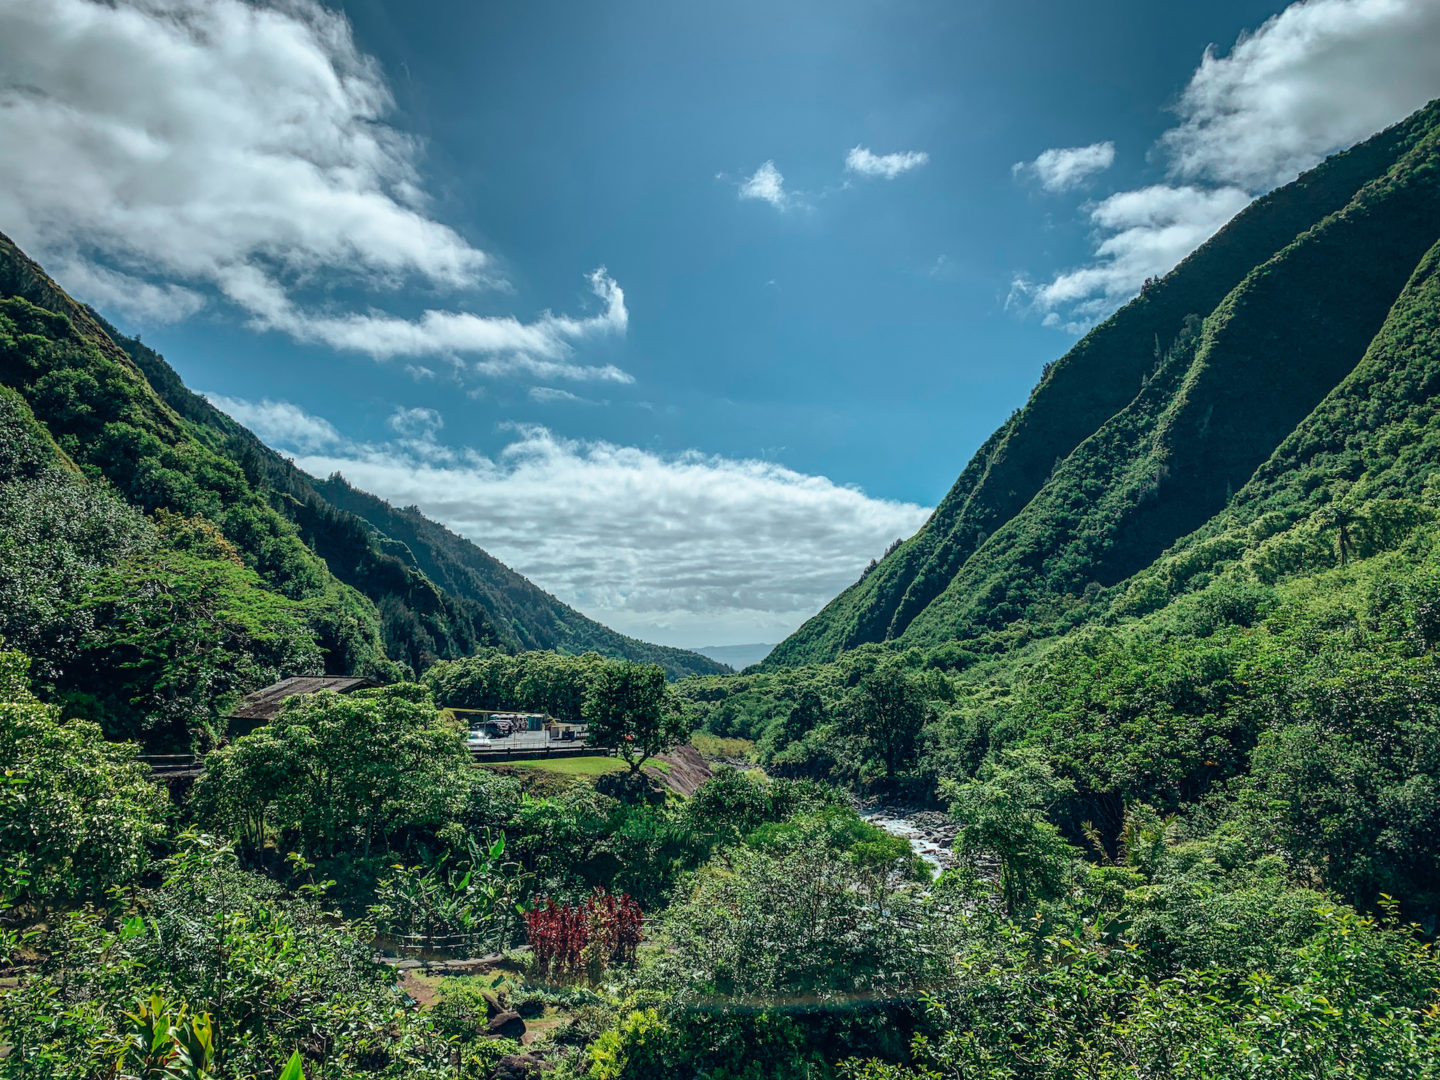 'Iao Valley - Maui Hawai'i